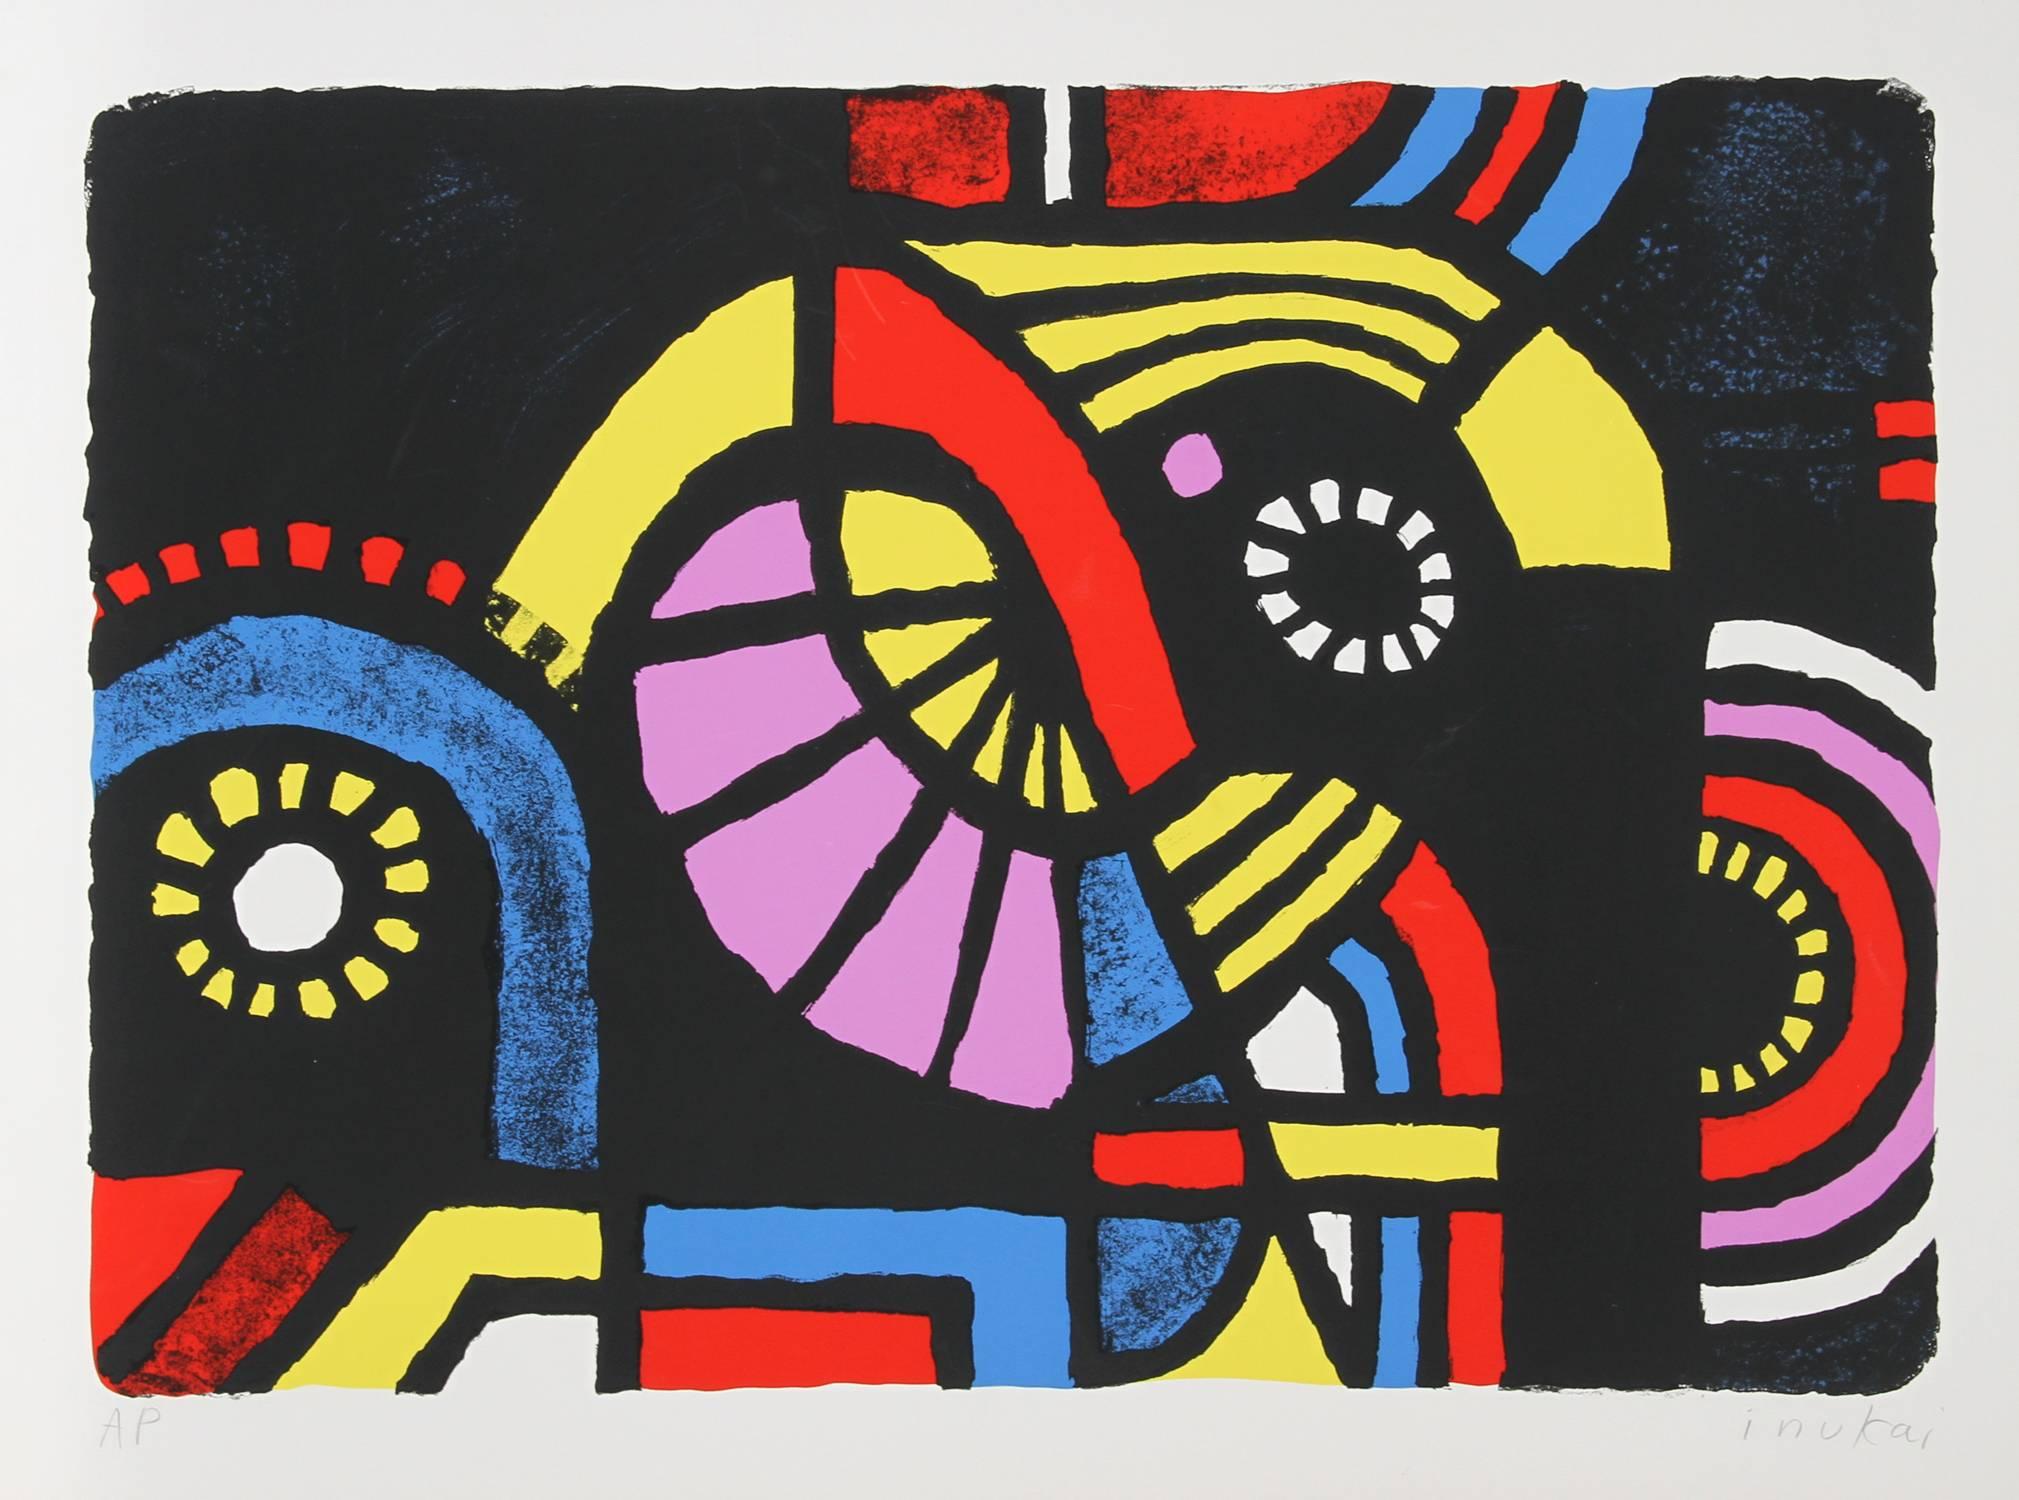 Artiste : Kyohei Inukai (alias Earle Goodenow), américain (1913 - 1985)
Titre : Coney Island
Année : 1979
Médium : Sérigraphie, Signé et numéroté au crayon
Edition : 200
Taille du papier : 22 x 30 pouces